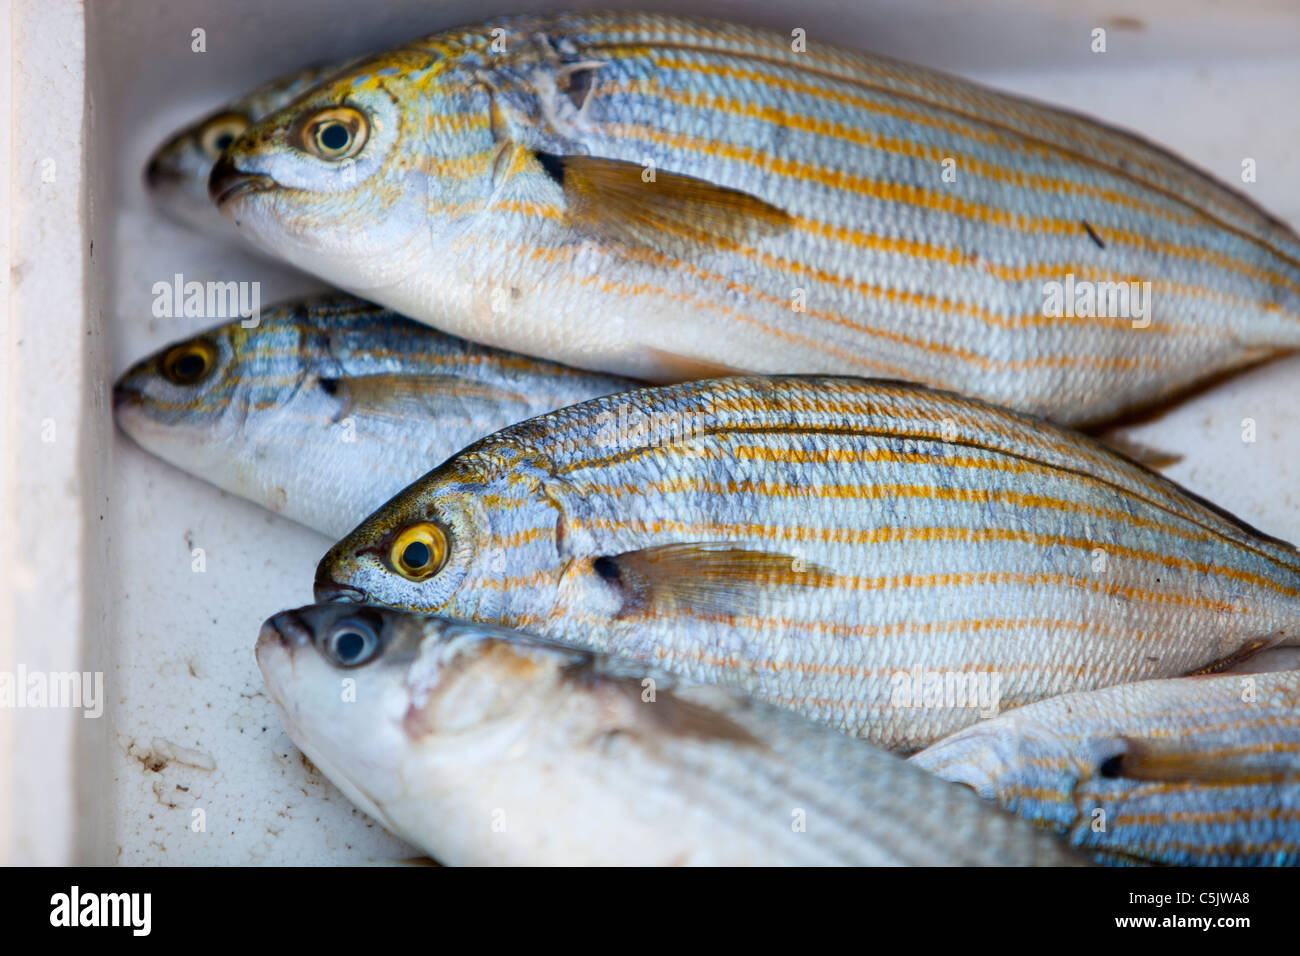 Les poissons pêchés au large de la Méditerranée Lesbos, Grèce. Banque D'Images